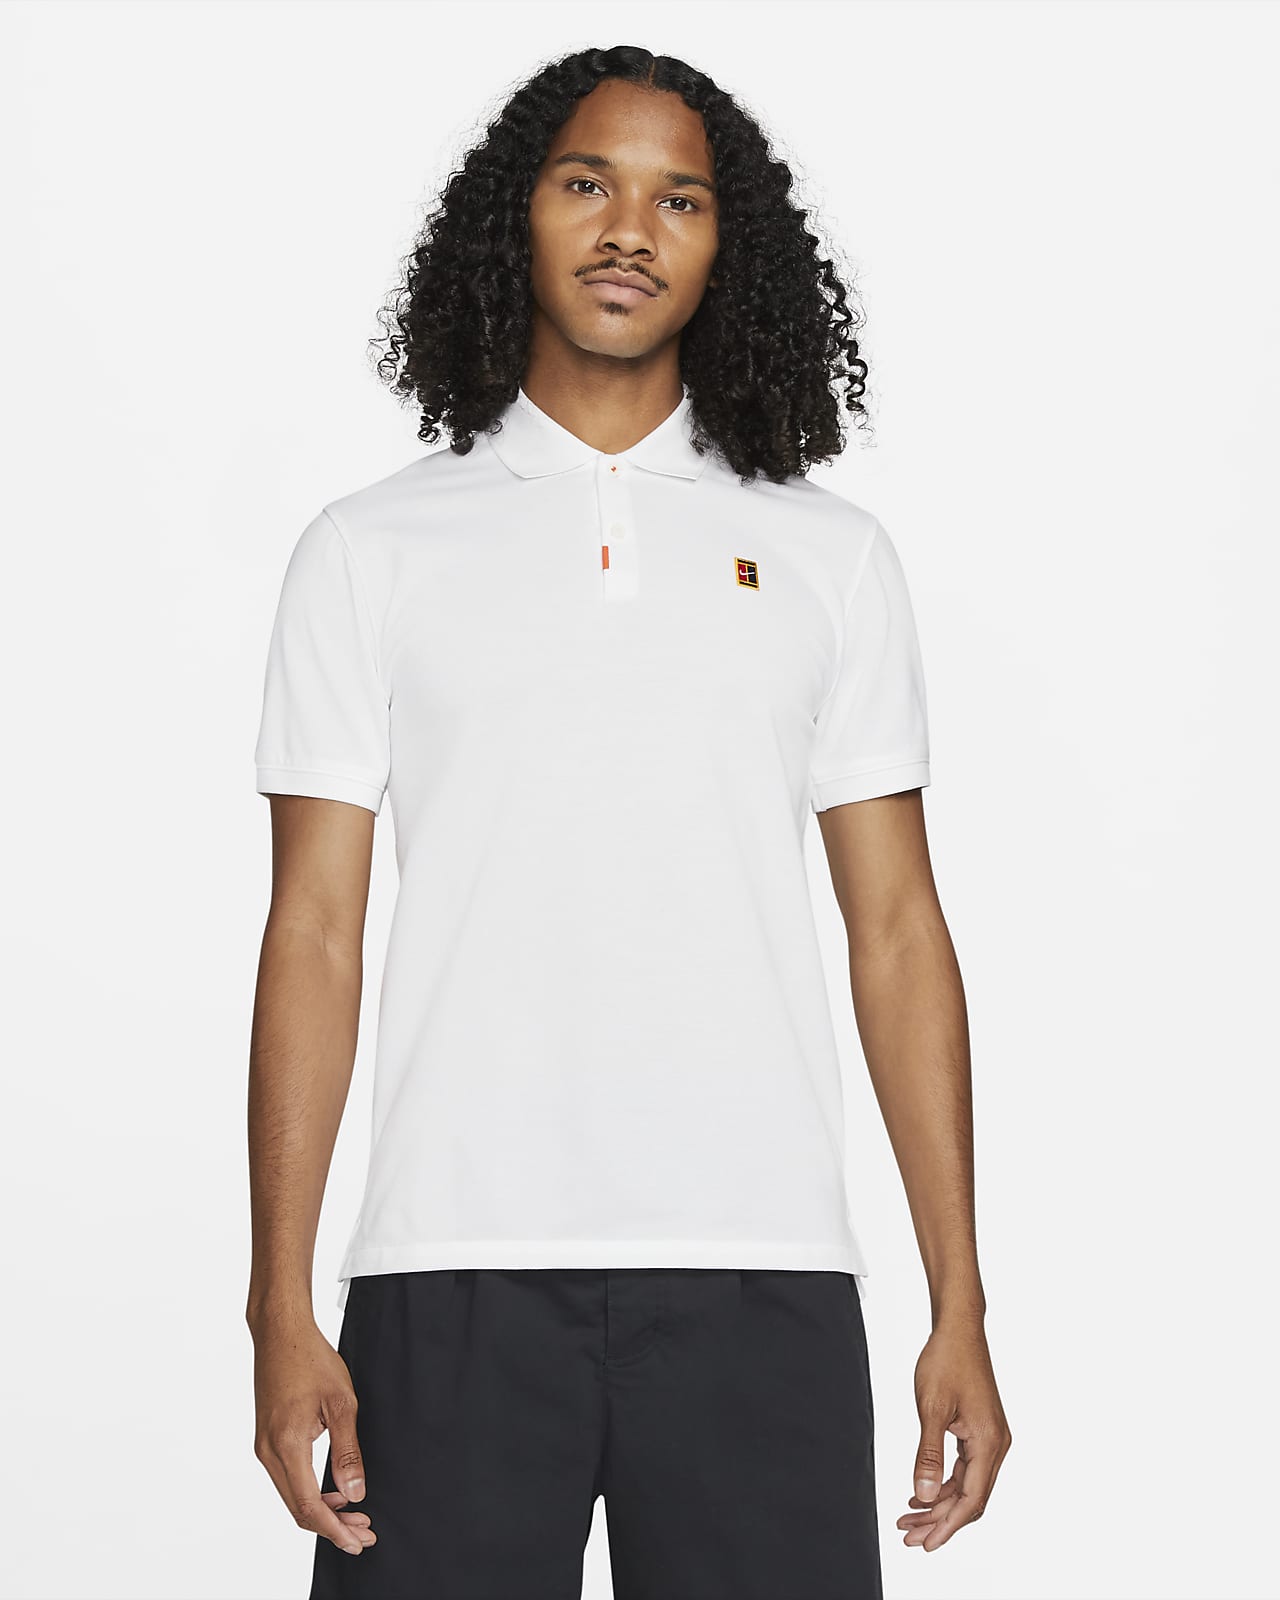 Ανδρική μπλούζα πόλο με στενή εφαρμογή The Nike Polo